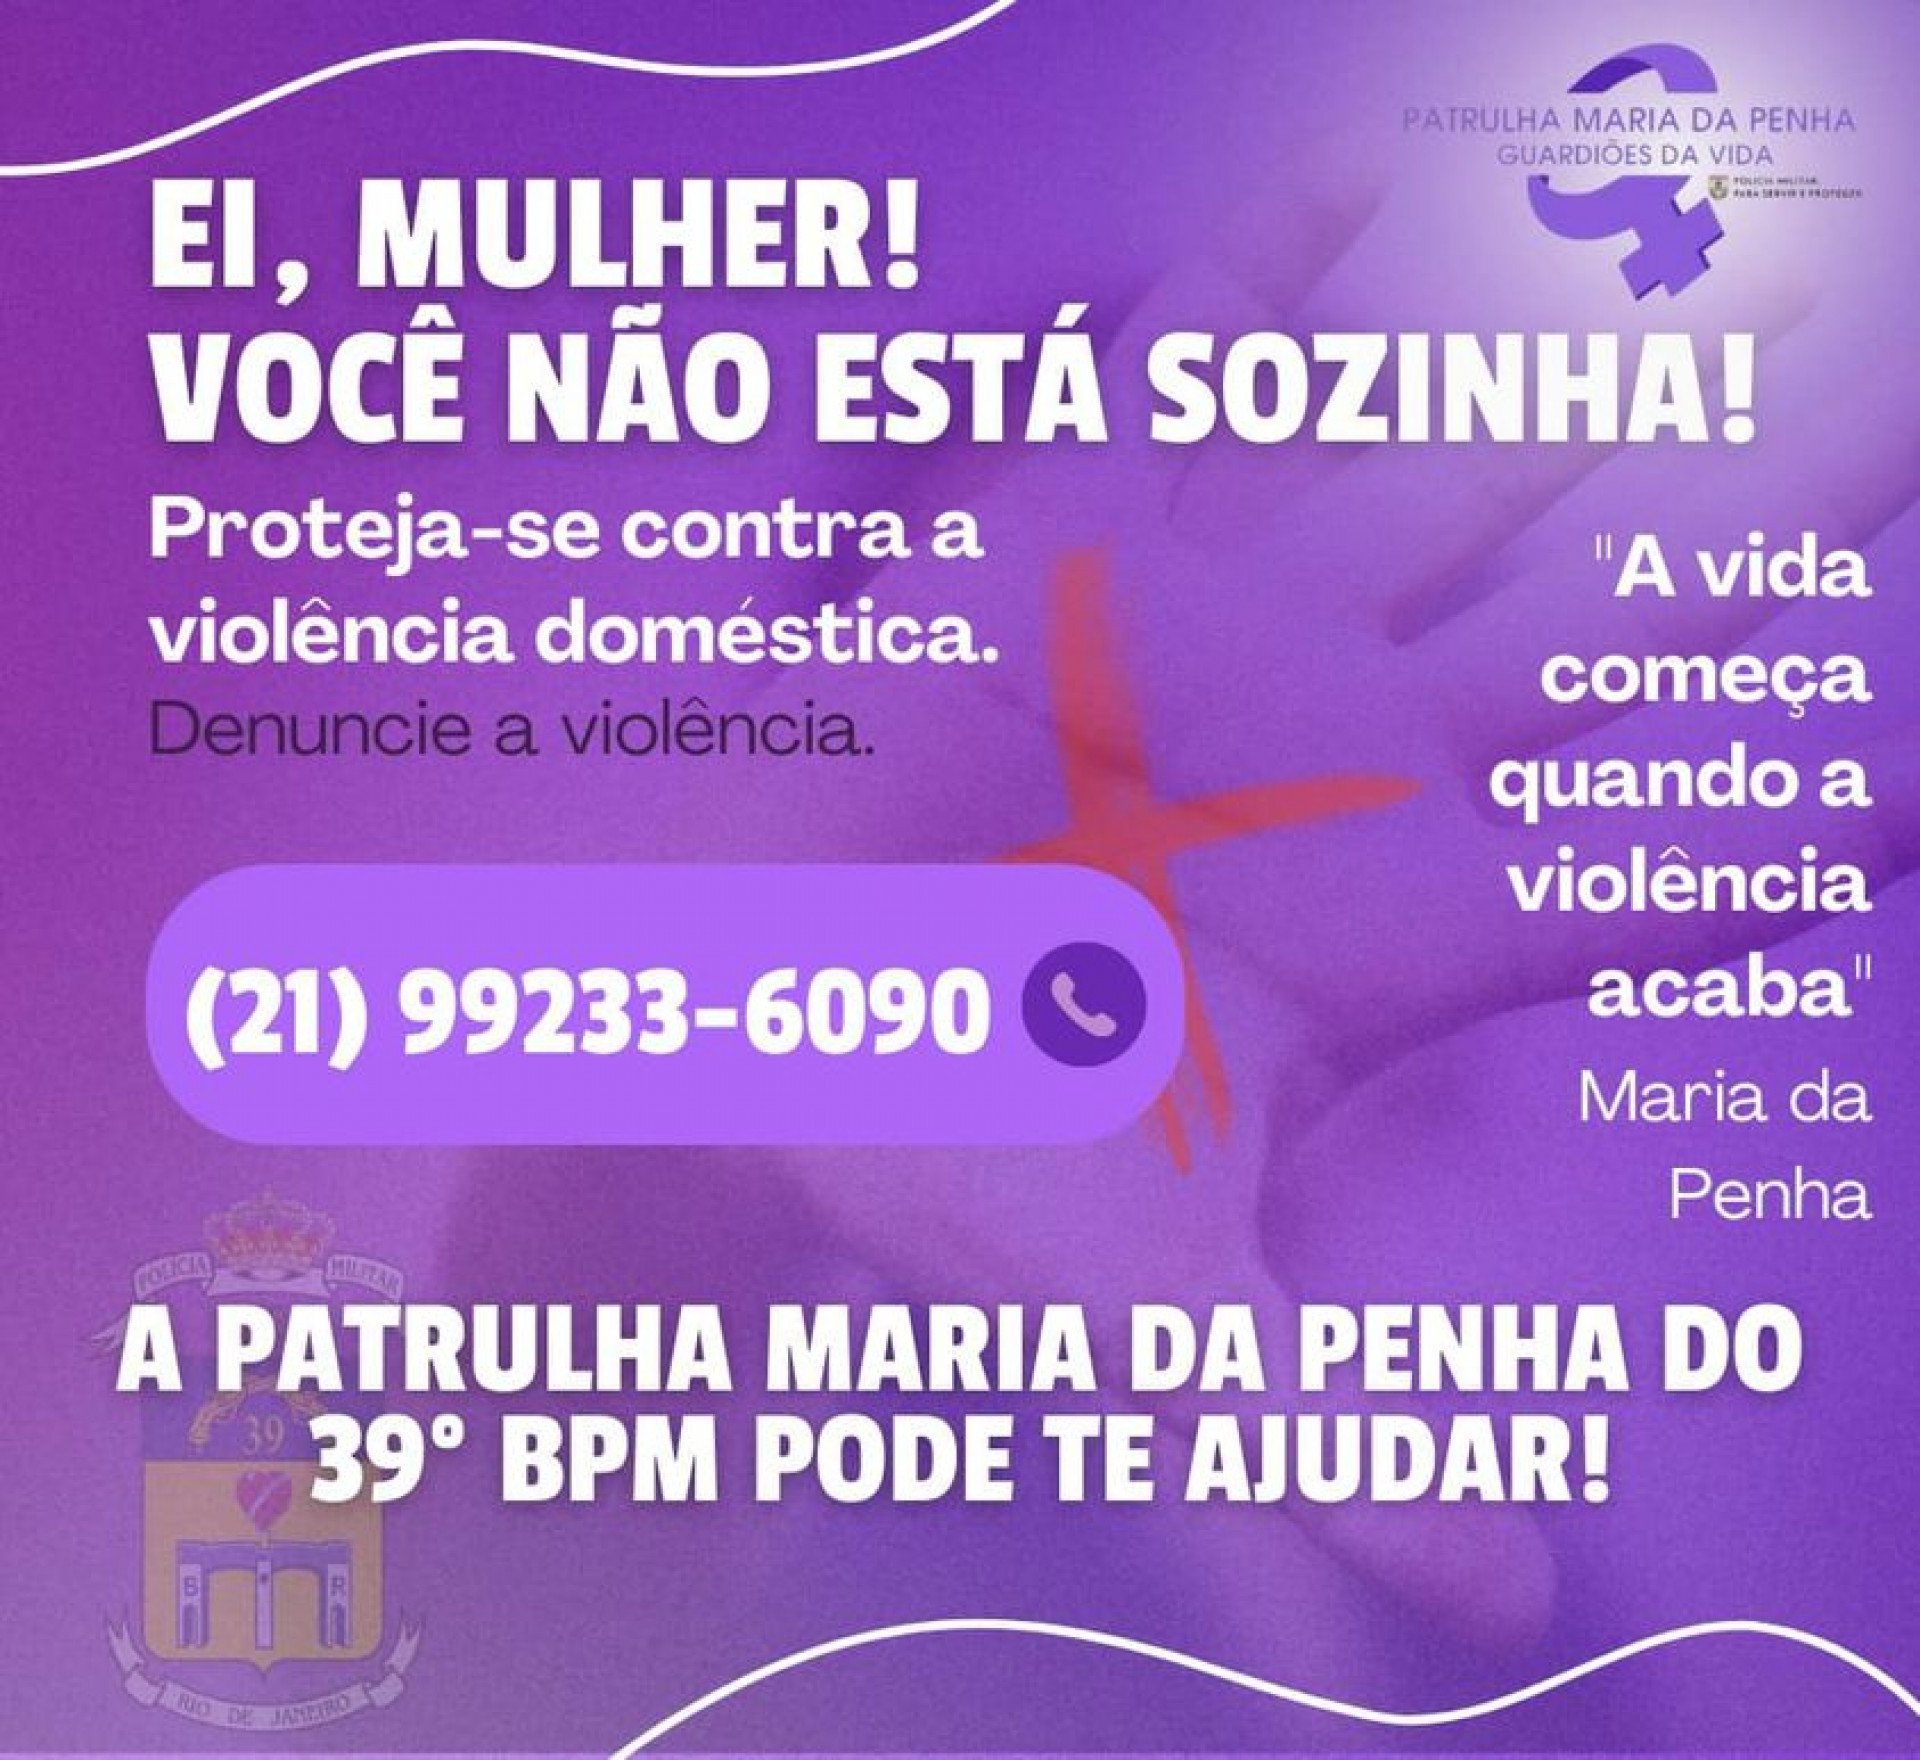 Novo contato Patrulha Maria da Penha 39º BPM - Belford Rpxp - Divulgação / Dani Souza 